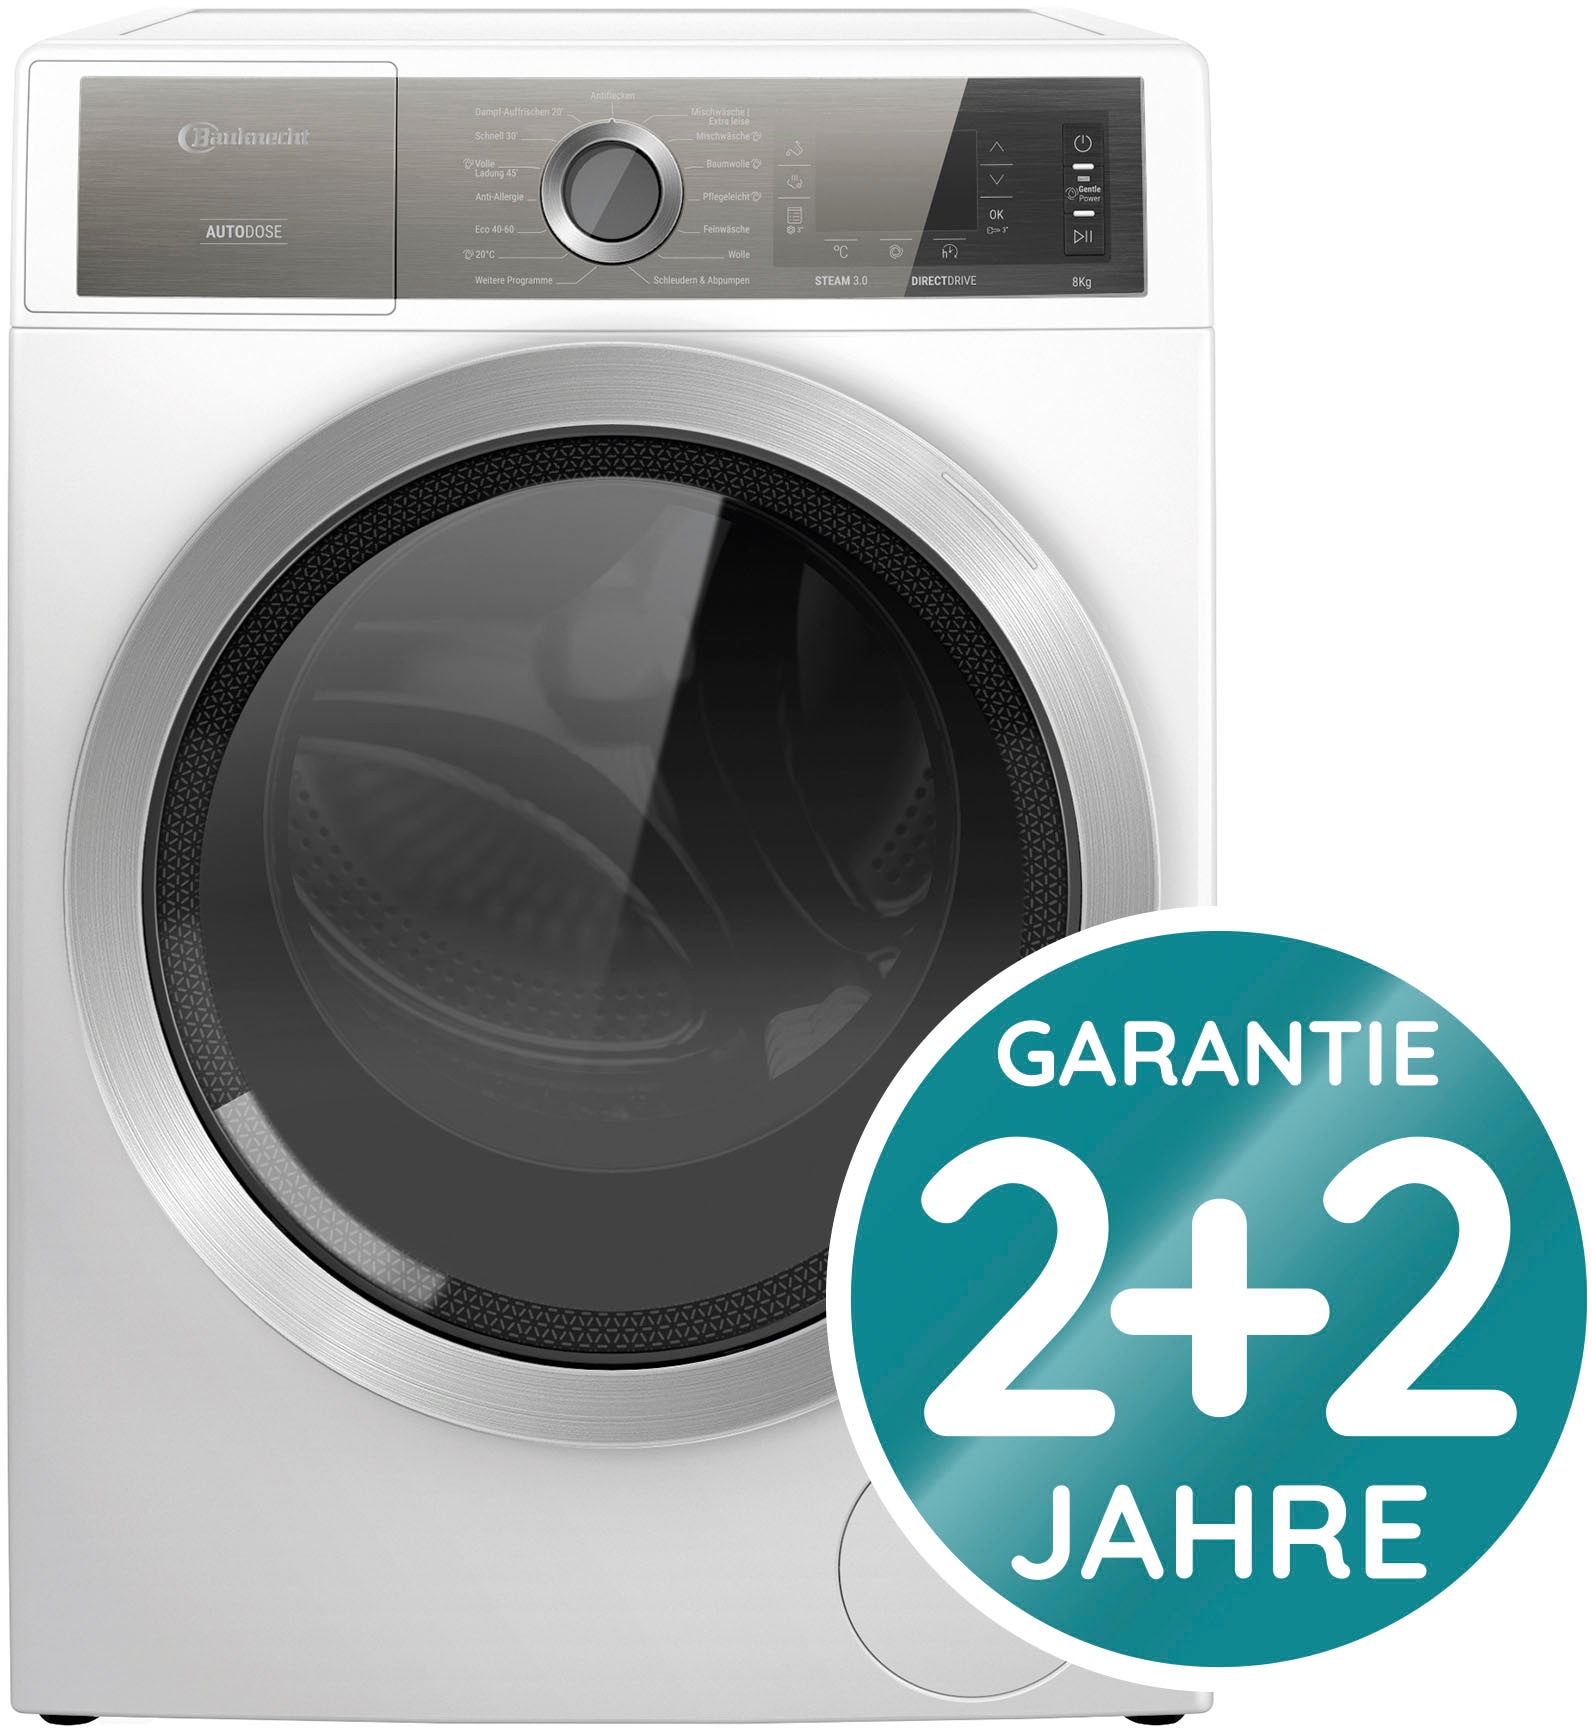 BAUKNECHT Waschmaschine 3 mit 8 Jahre DE«, AutoDose, 1400 W846WB XXL 4 Garantie U/min, DE, B8 W846WB kg, »B8 Herstellergarantie Jahren